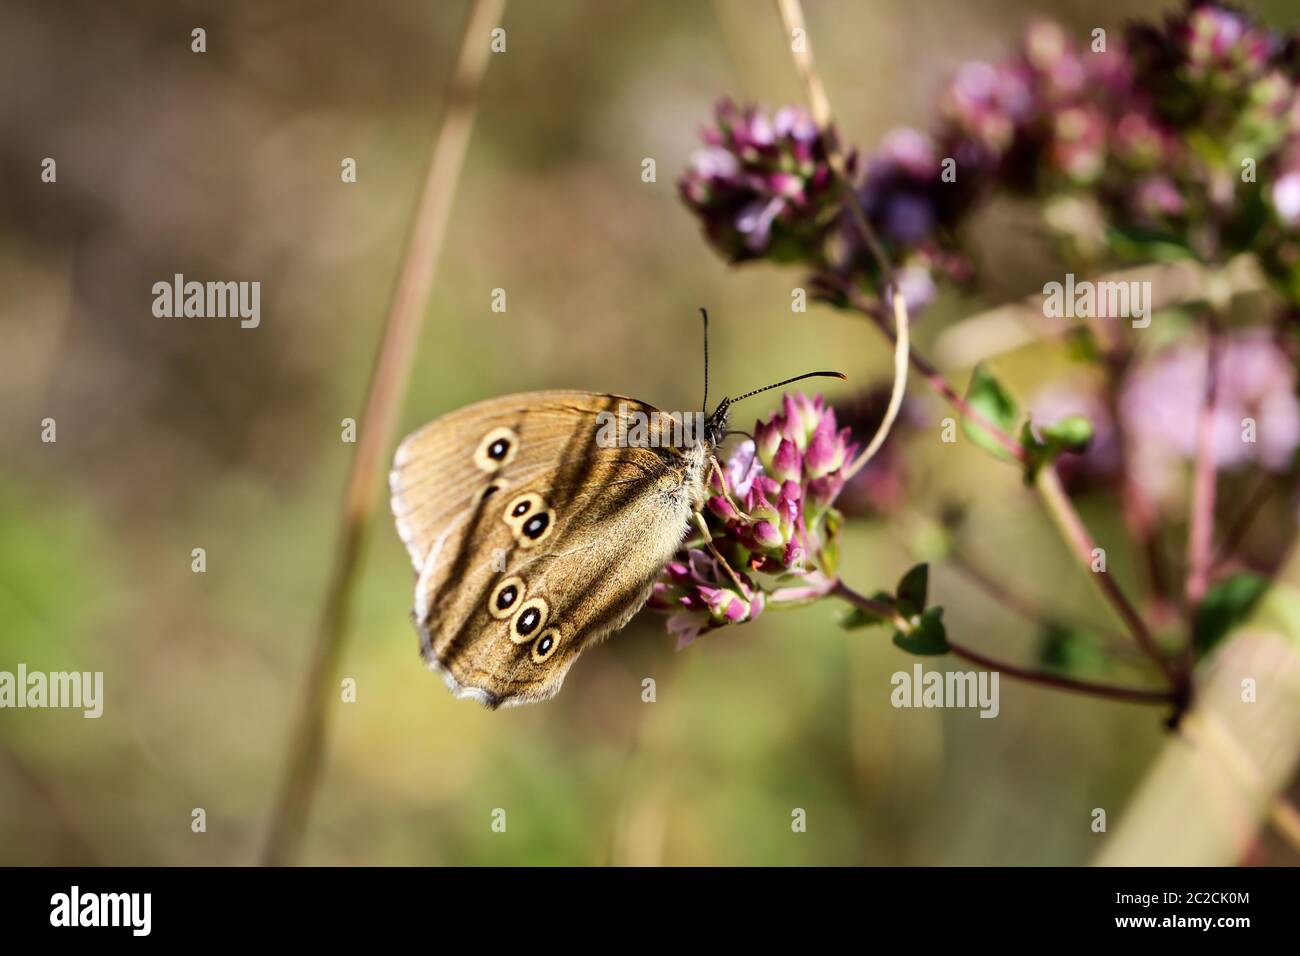 Close-up de una mariposa, el excursionismo en una planta Foto de stock